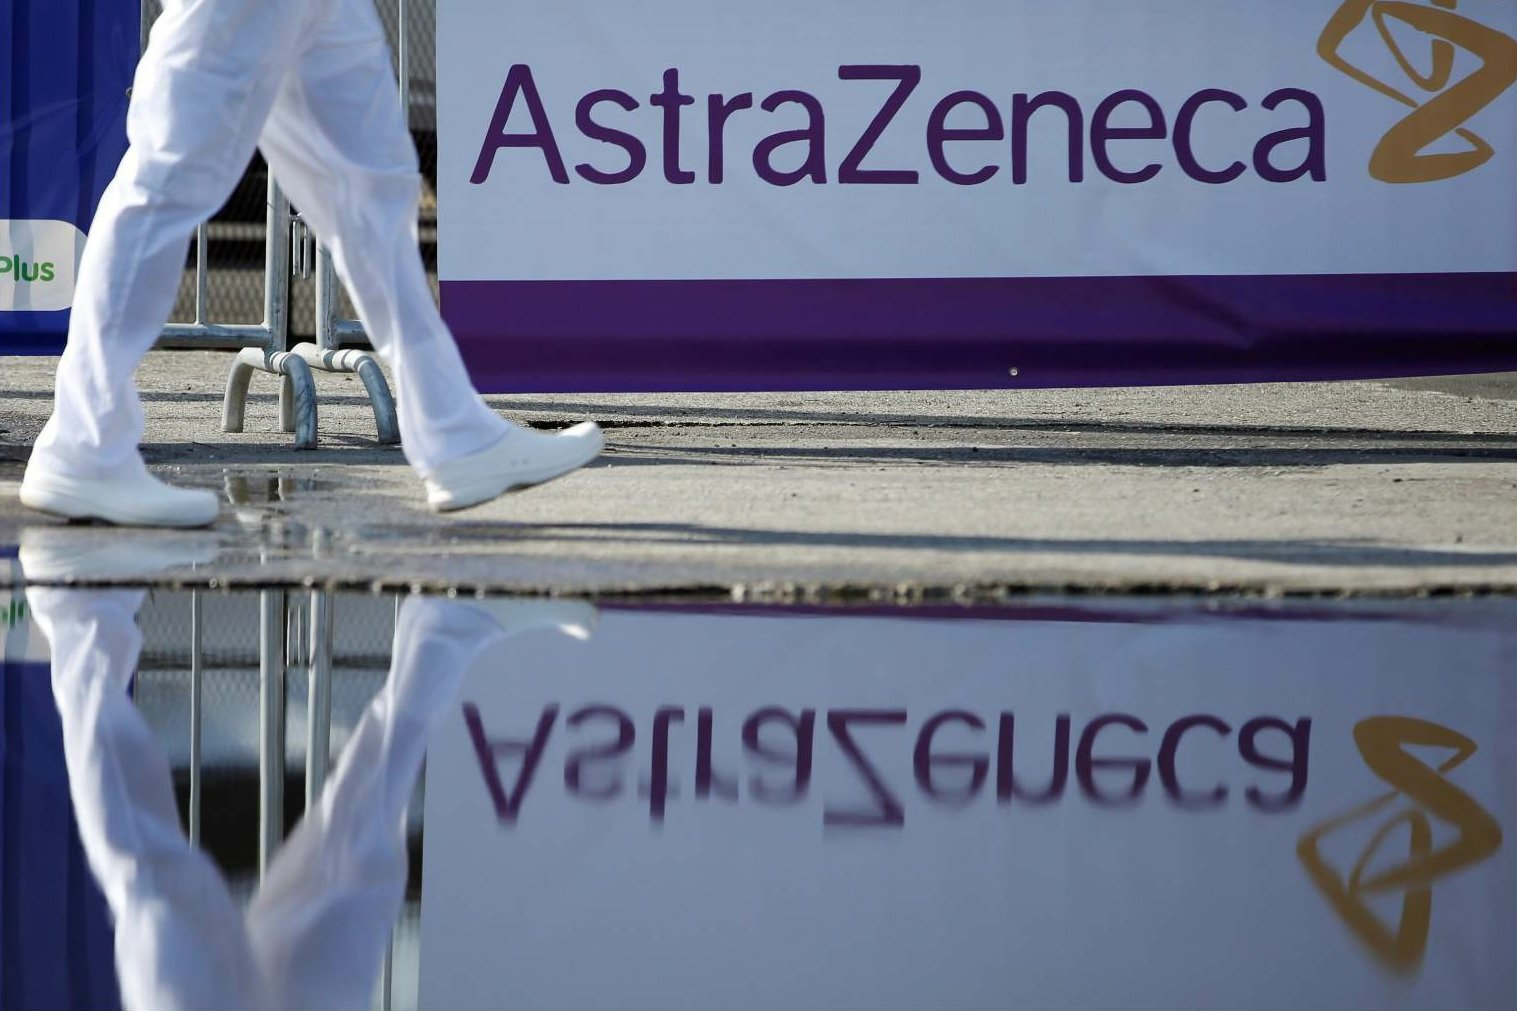 AstraZeneca vaccina il Terzo Mondo a prezzo di costo. Ma non era solo per over 60?